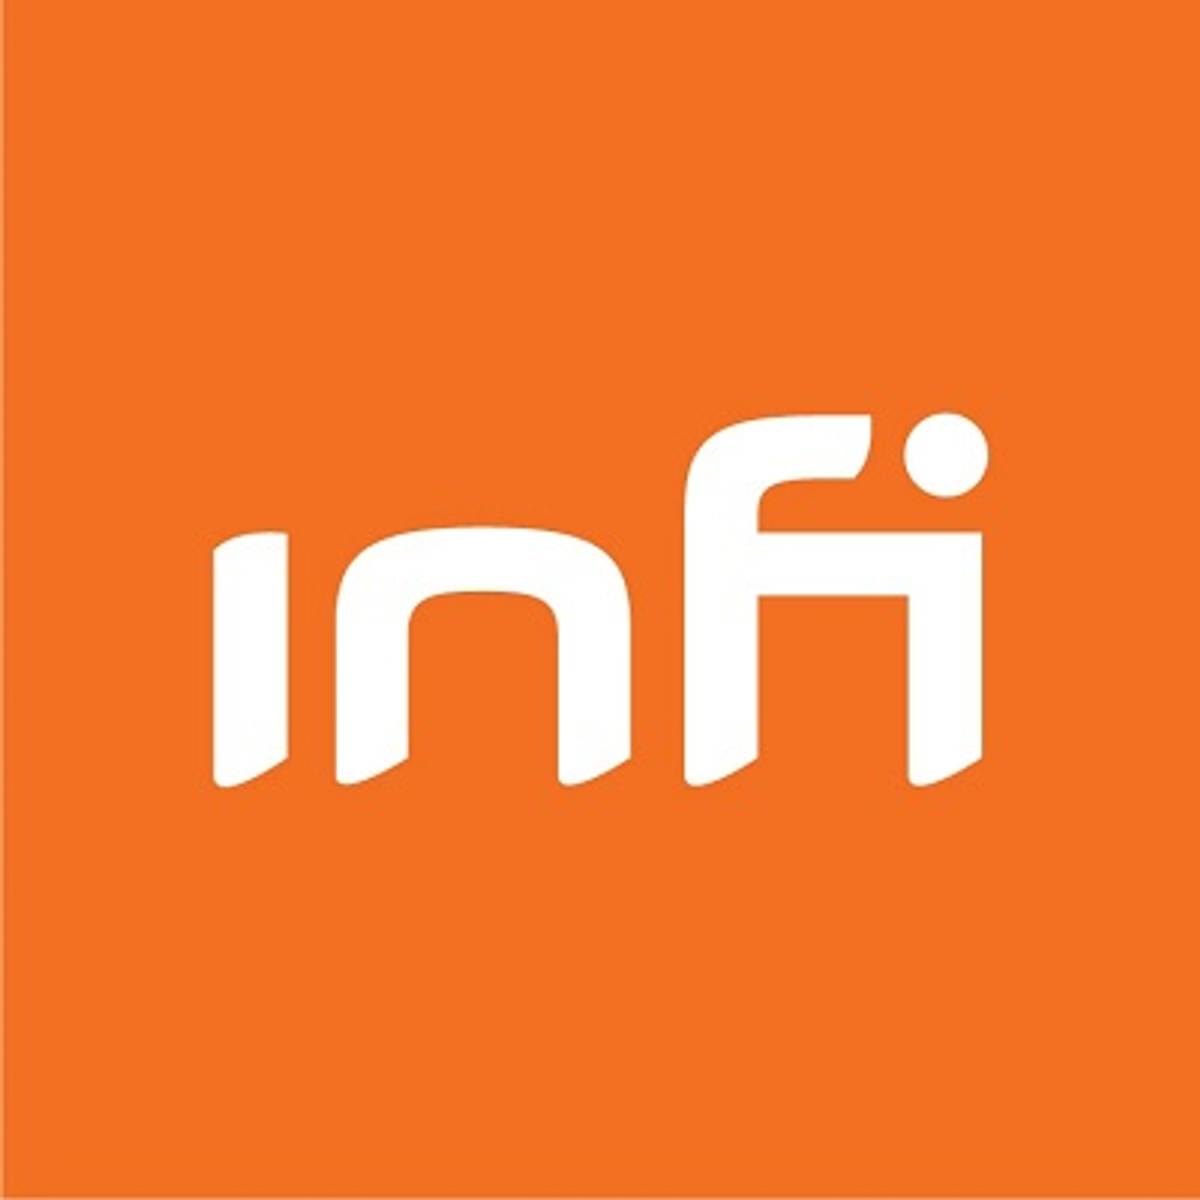 Software-ontwikkelaar Infi maakt iedere medewerker mede-eigenaar image